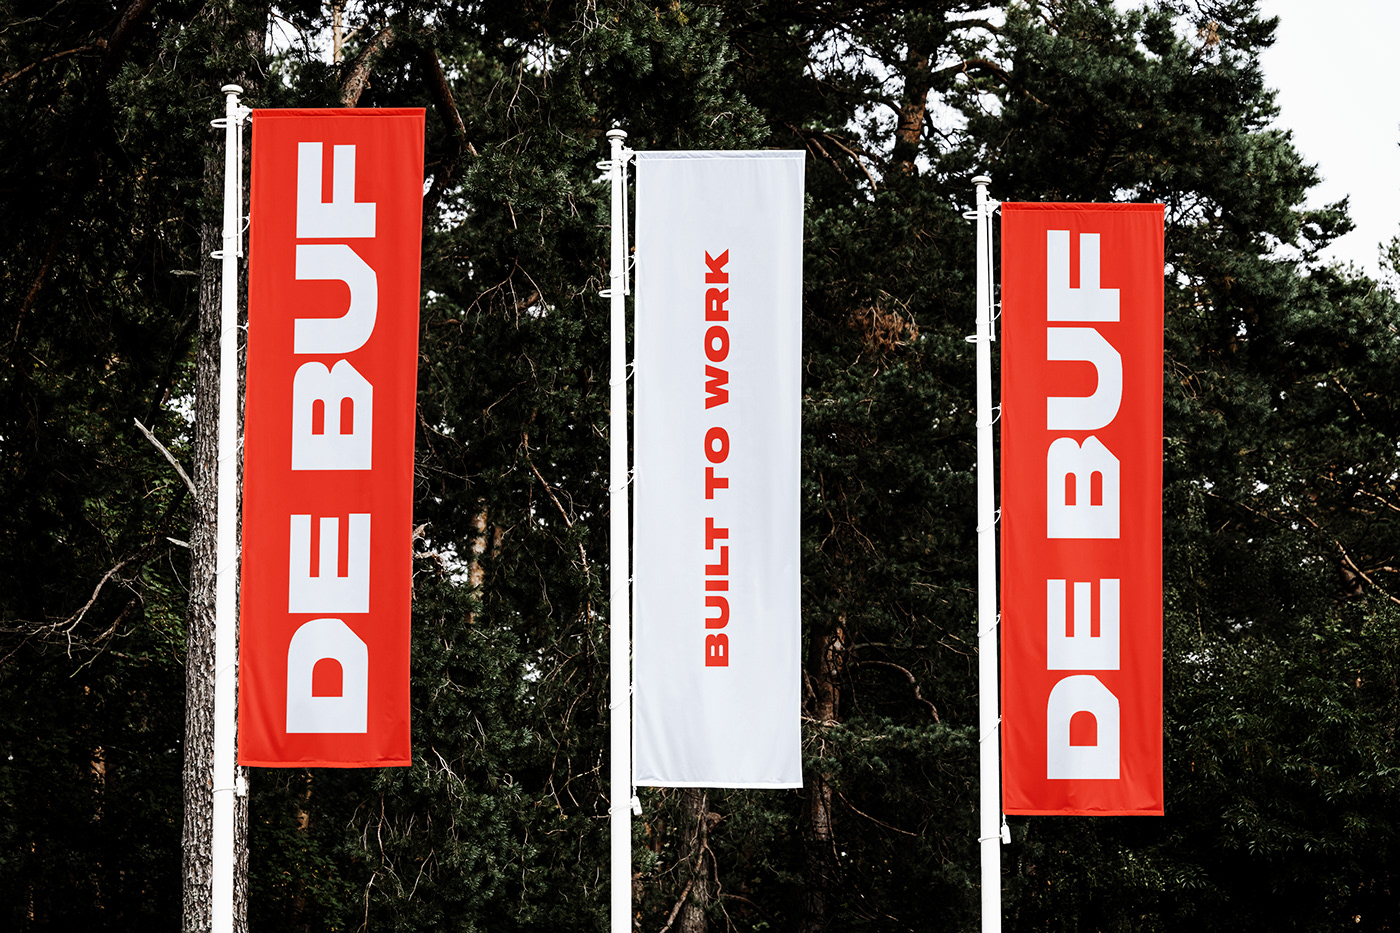 Outdoor flags for De Buf.